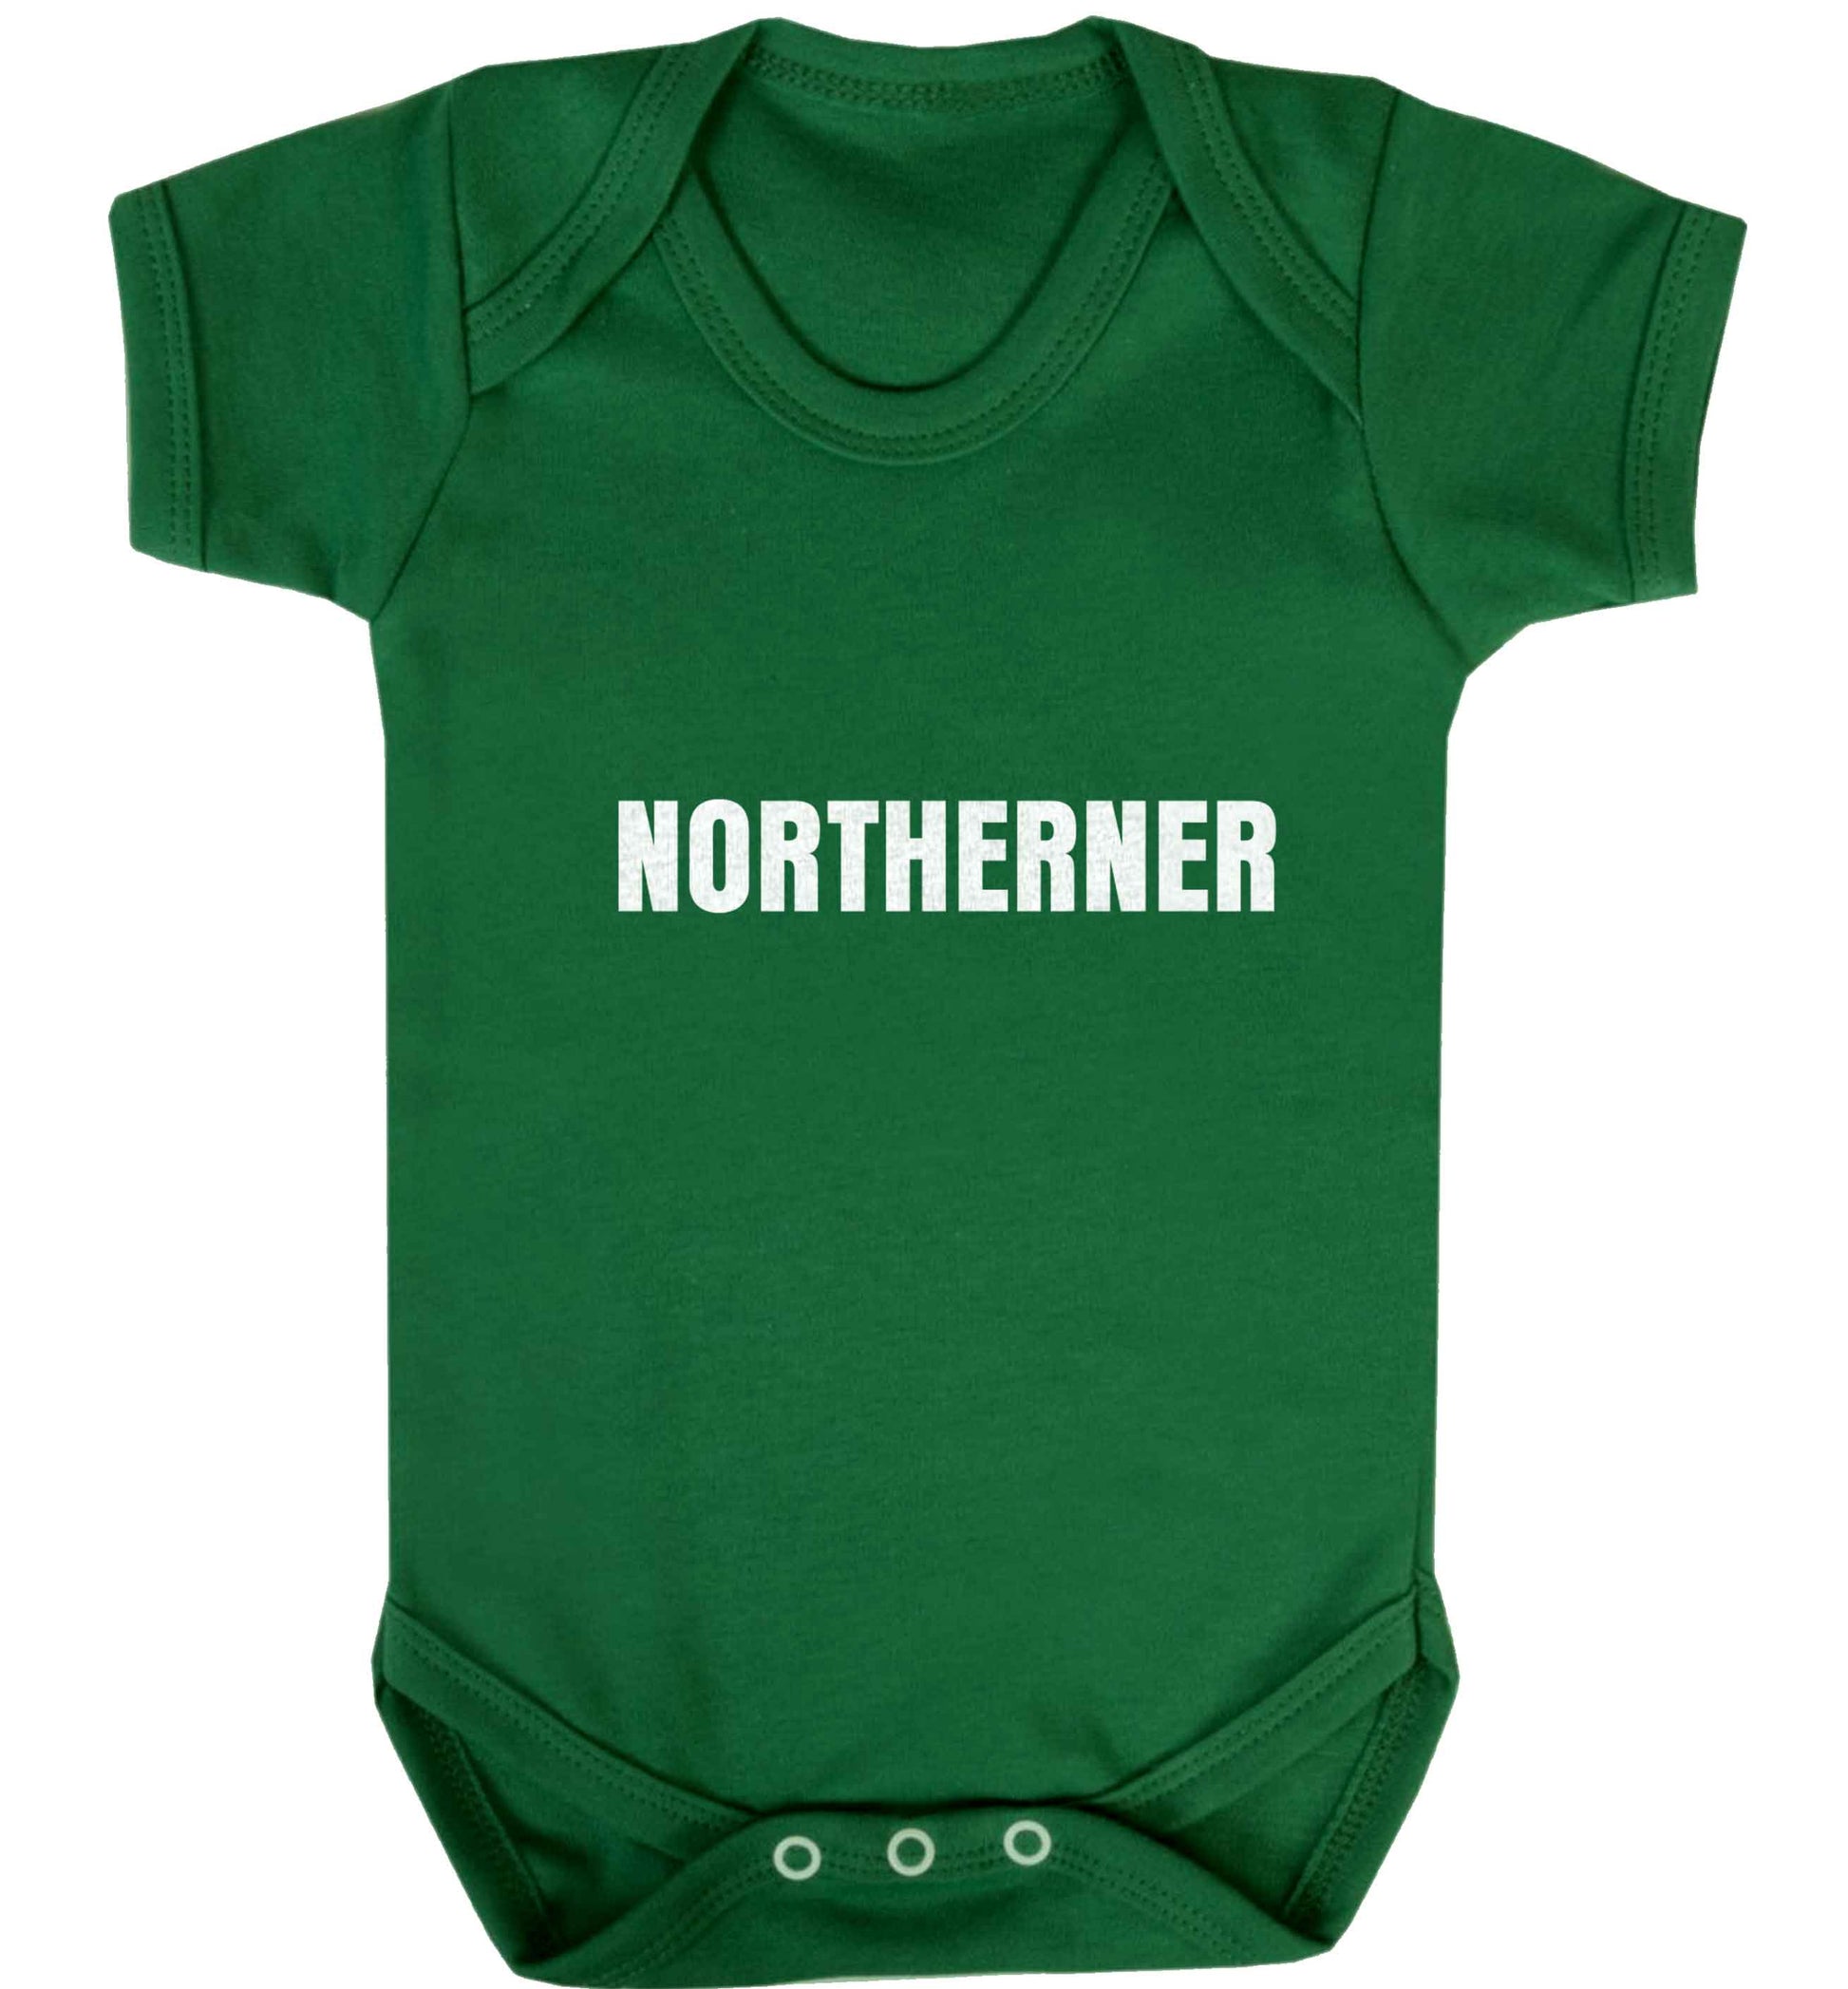 Northerner baby vest green 18-24 months